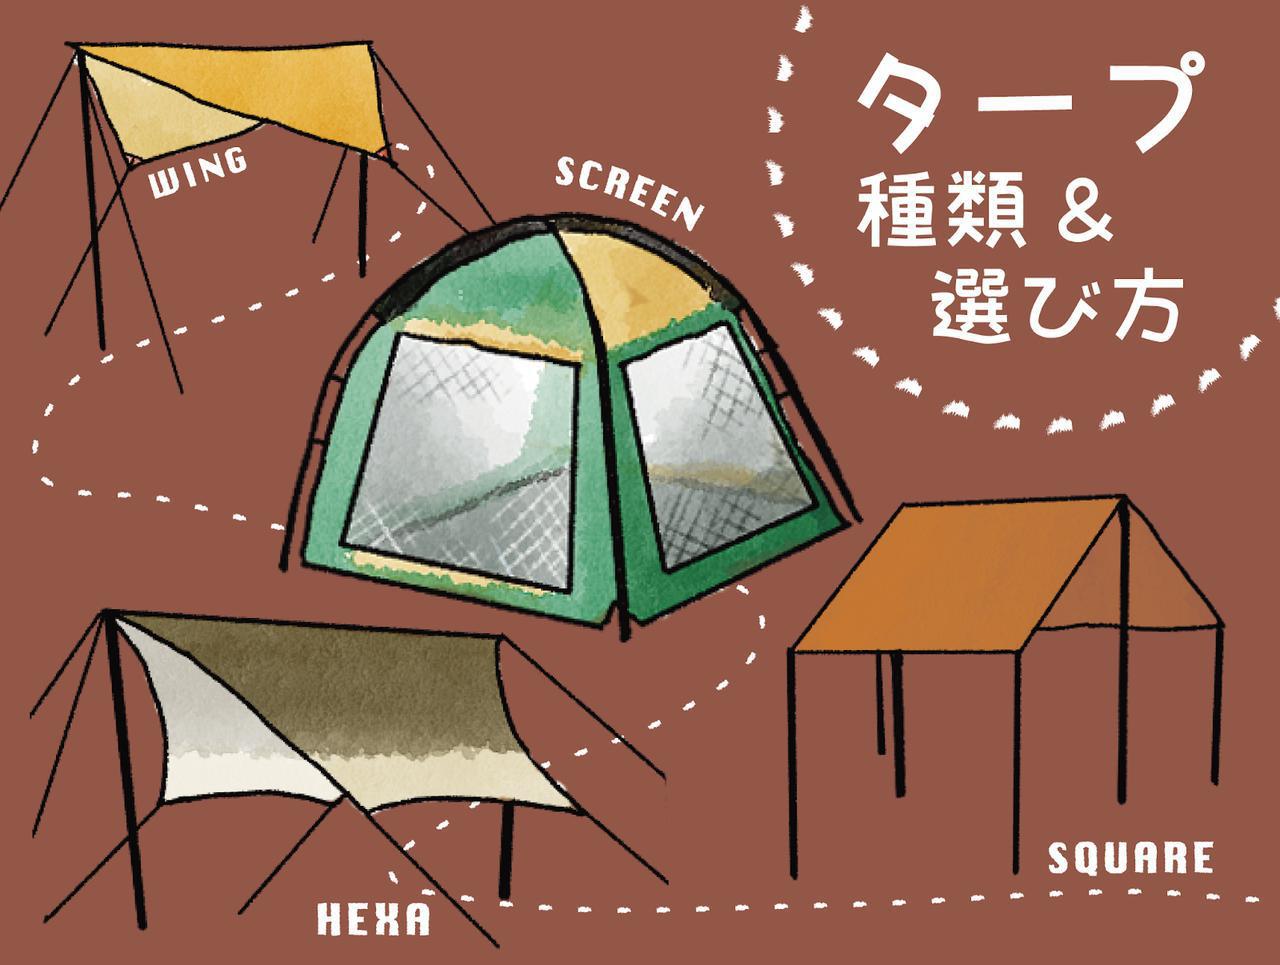 まとめ 愛用者おすすめ キャンプ用タープ5選 人気ブランドから玄人ウケのものまで お役立ちキャンプ情報 21年07月28日 日本気象協会 Tenki Jp